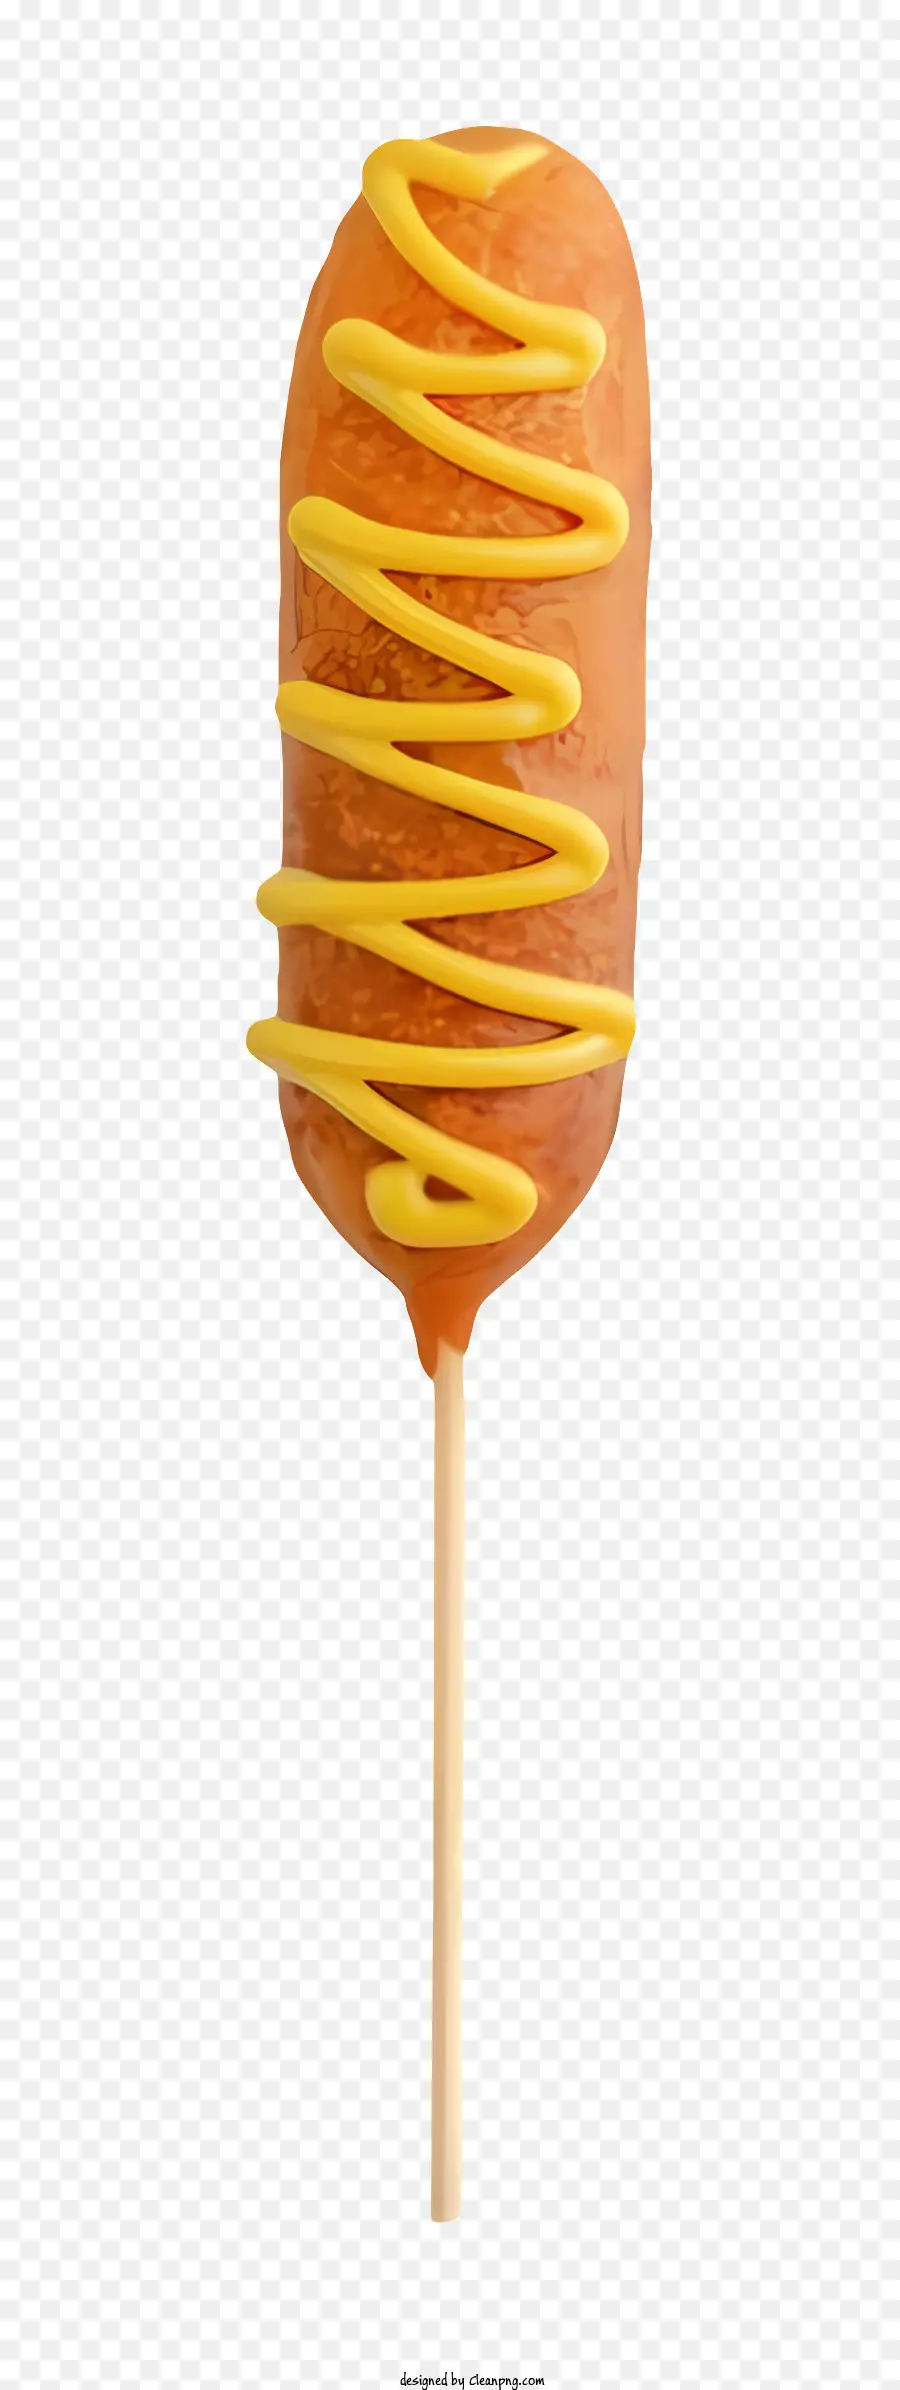 kẹo kẹo mút caramel trên một cây kẹo mút kẹo xoáy màu vàng với kẹo có hương vị caramel frosting - CARAMEL Lollipop màu vàng với vòng xoáy mờ trắng